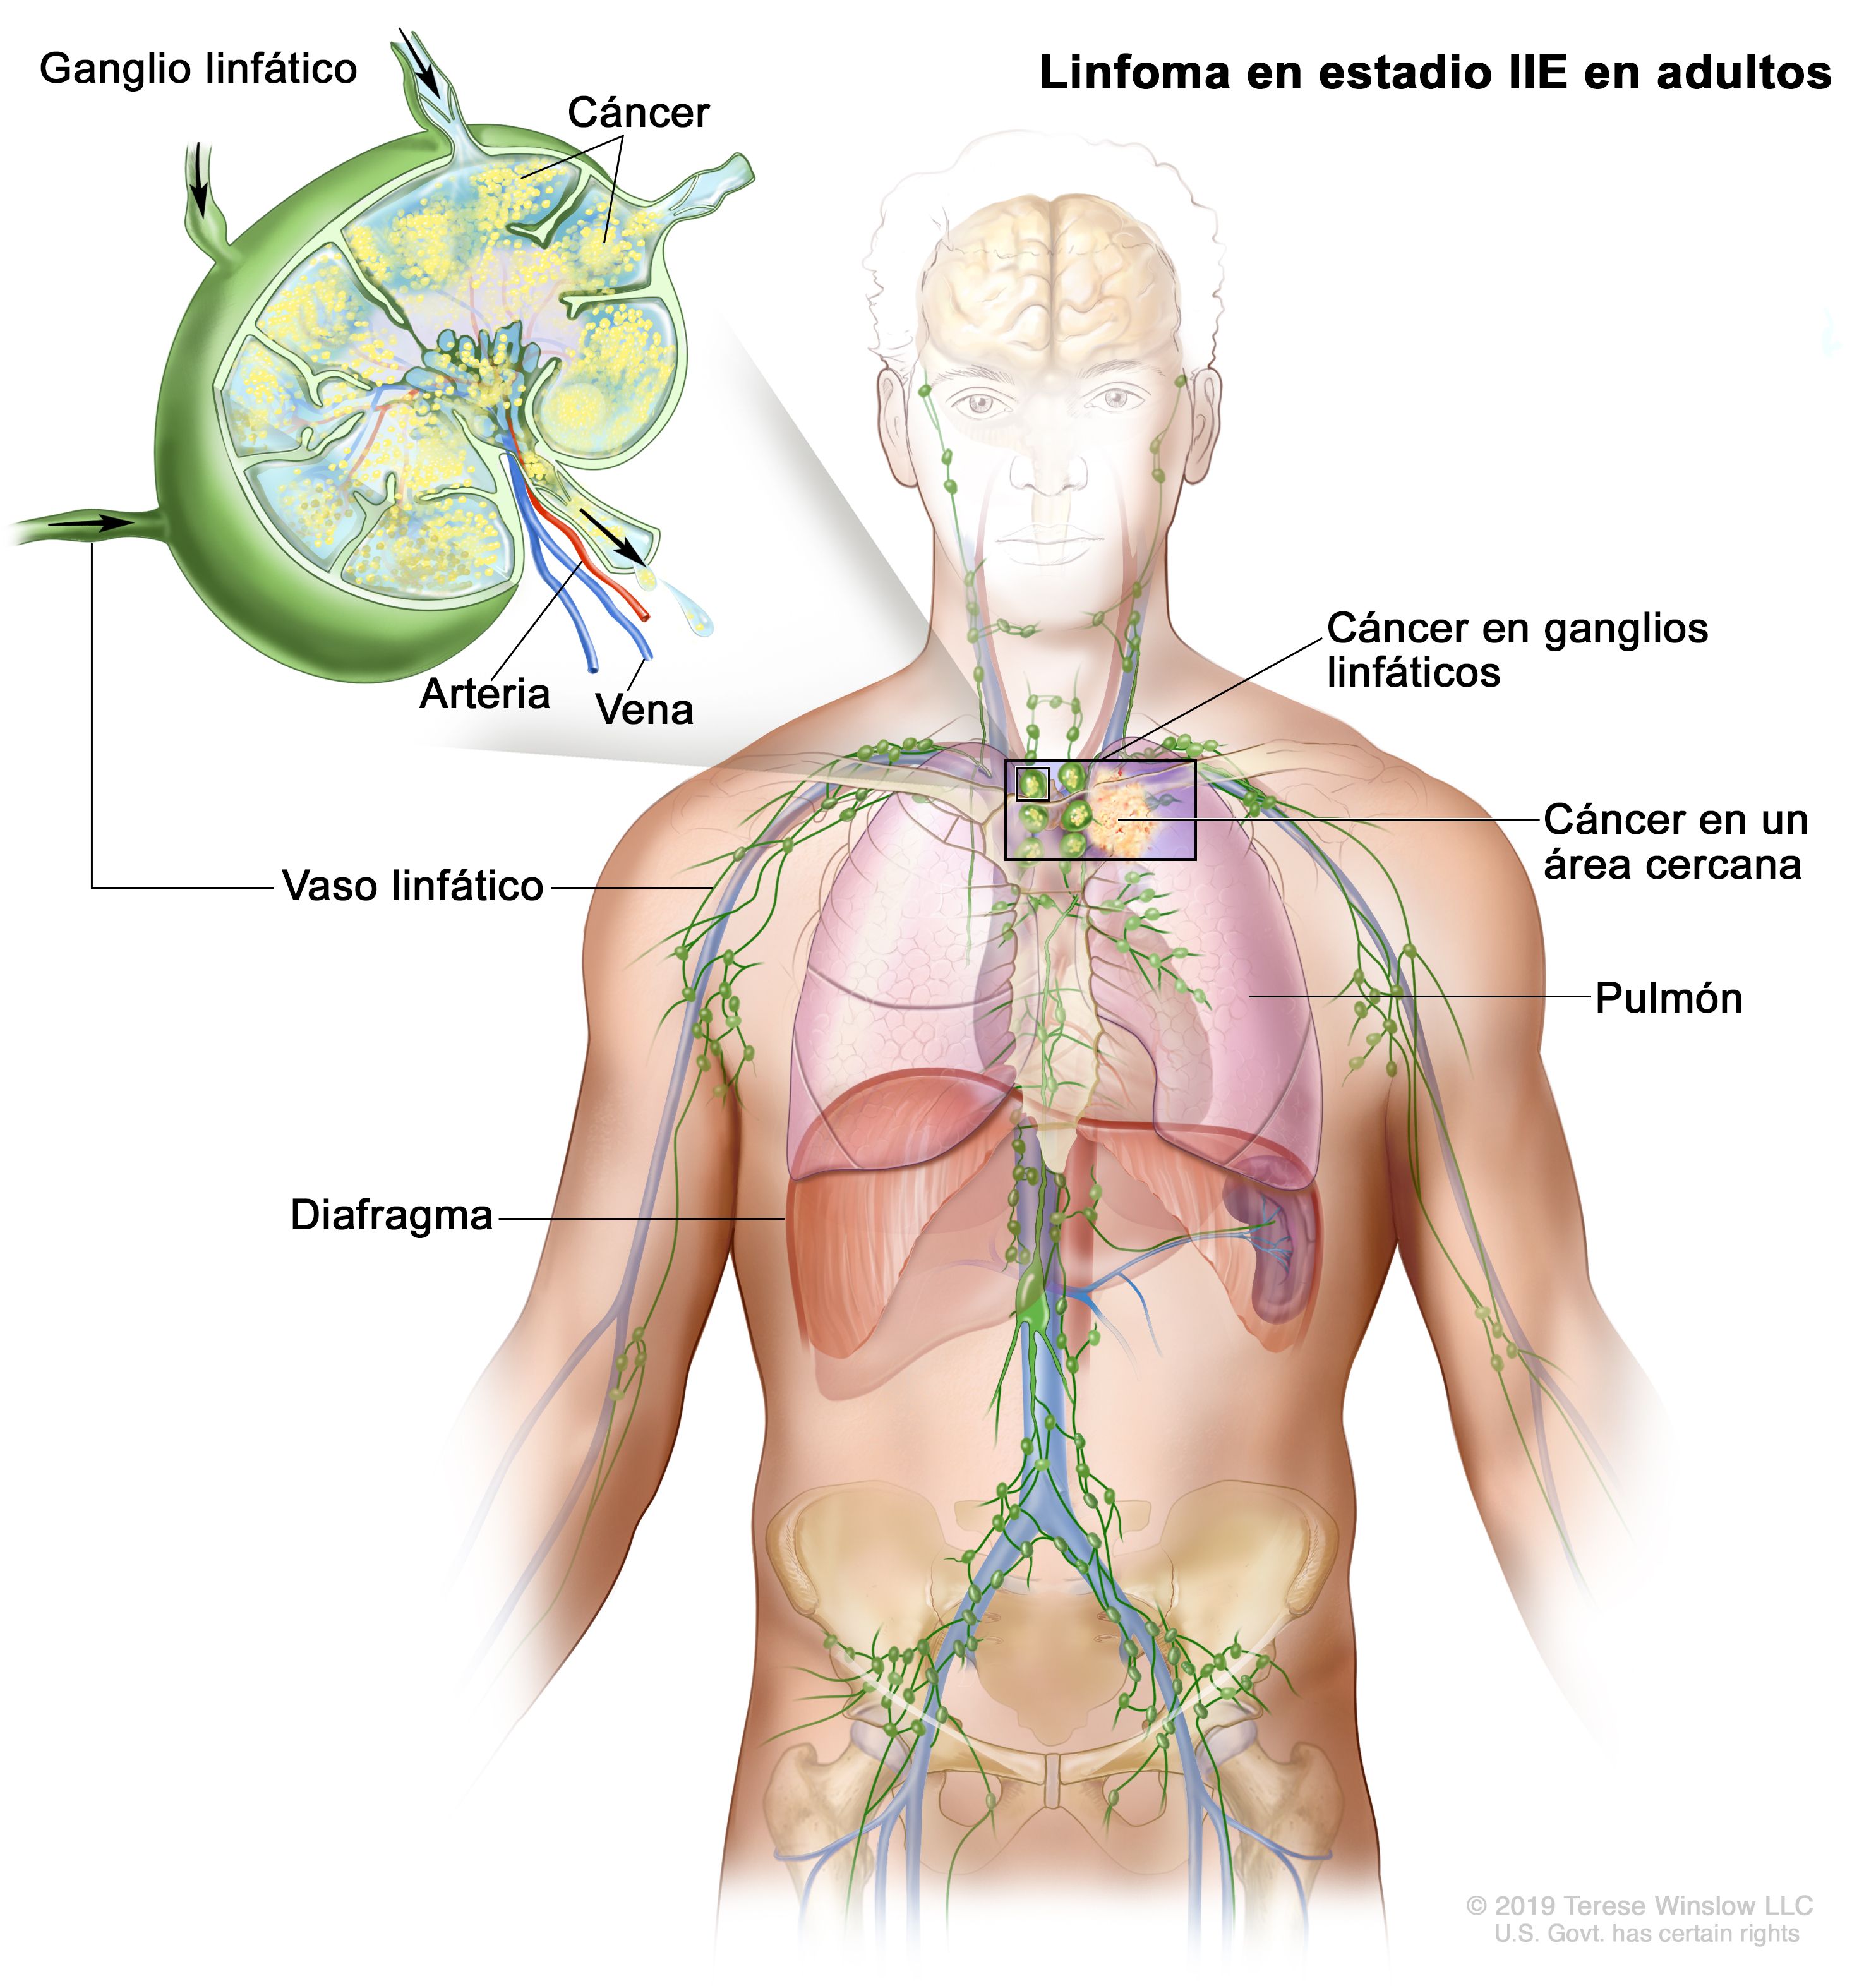 Cancer de hodgkin, Difteria – Corynebacterium diphteriae - Cancer linfatico hodgkin sintomas